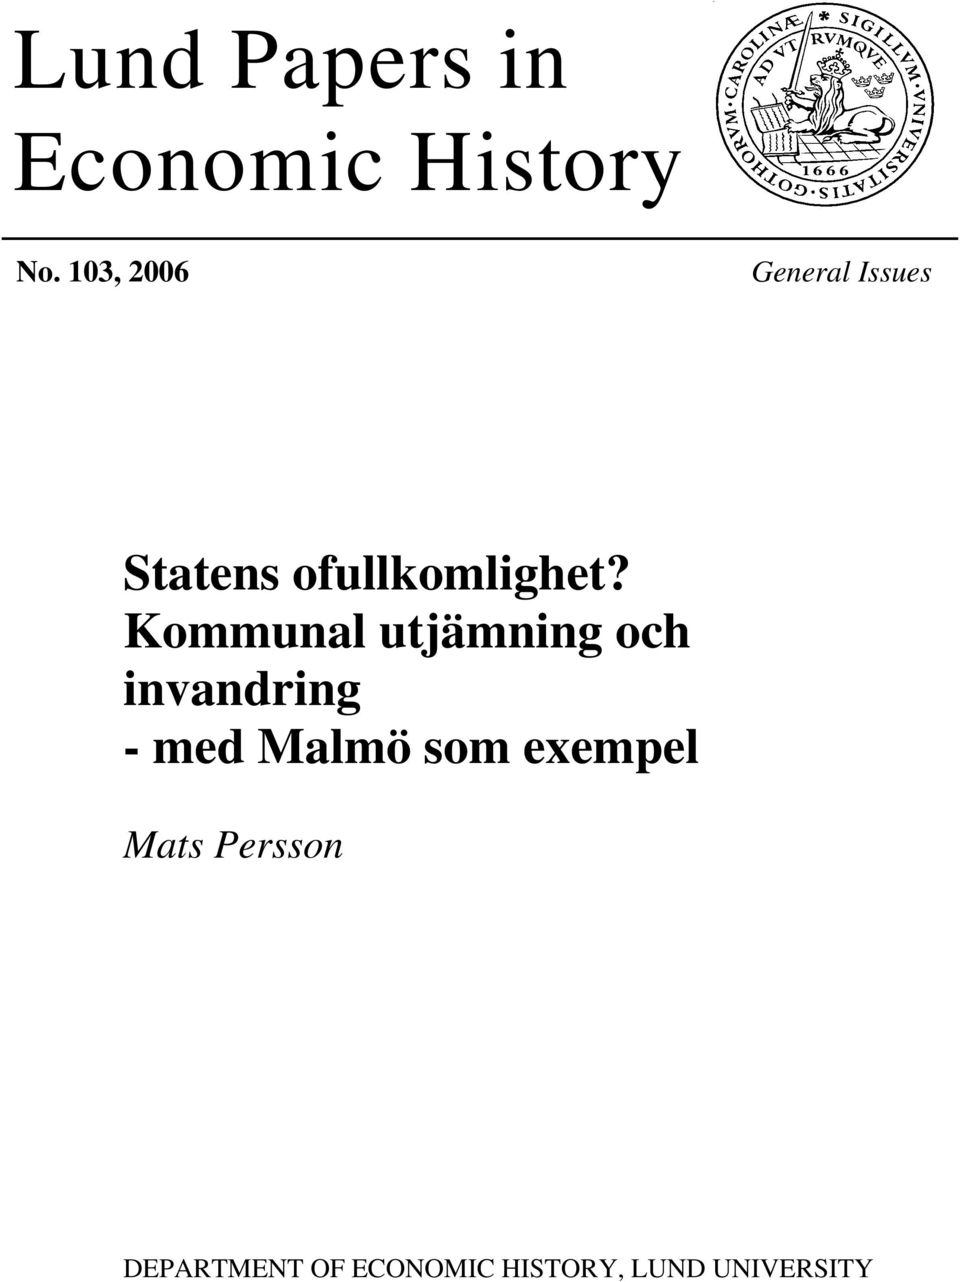 Kommunal utjämning och invandring - med Malmö som